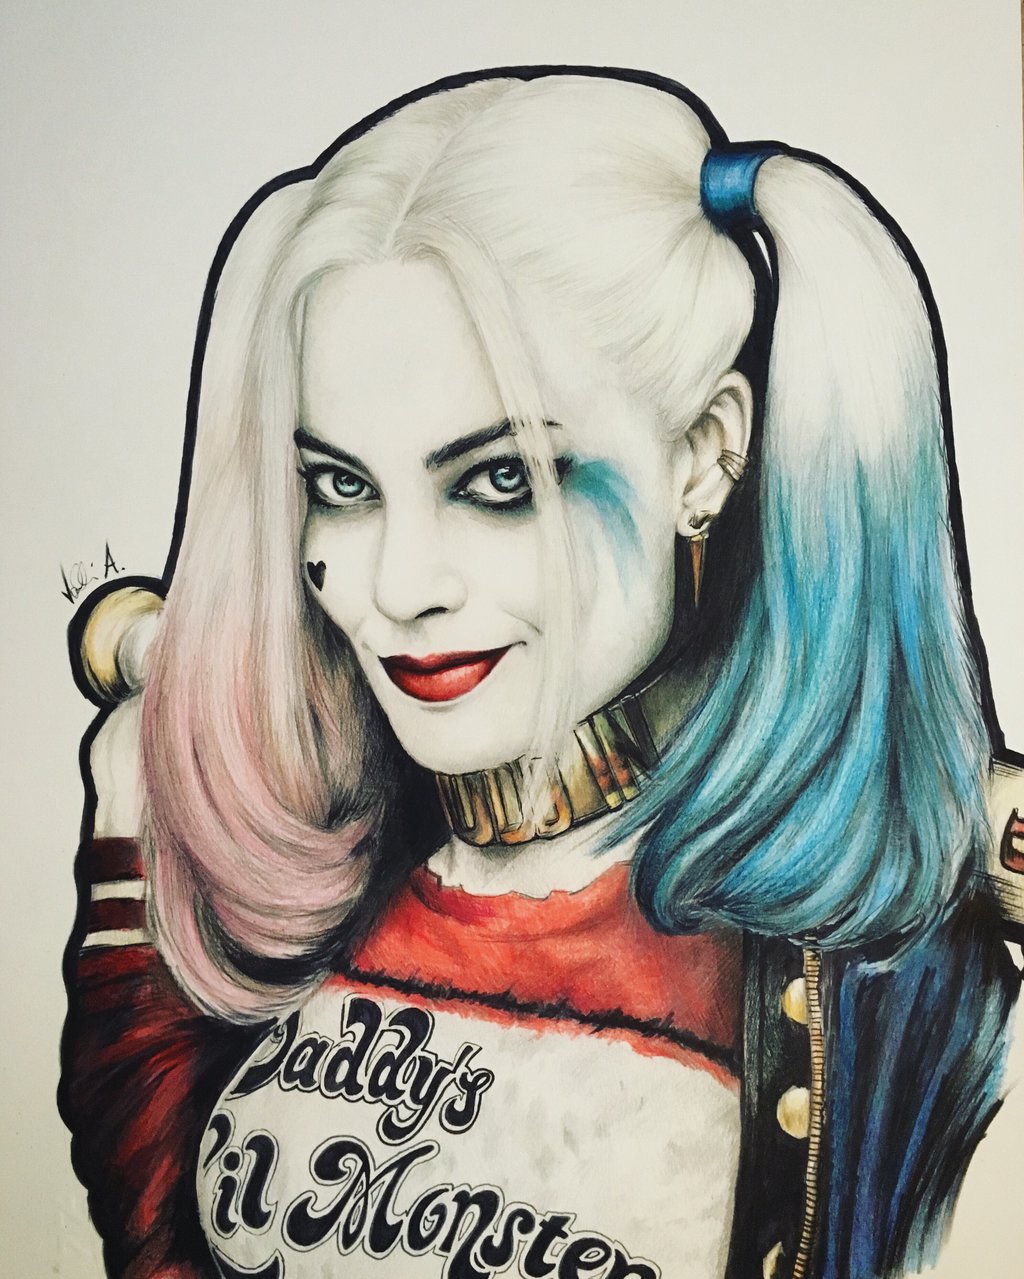 David Duke - Harley Quinn Joker Sketch Cover